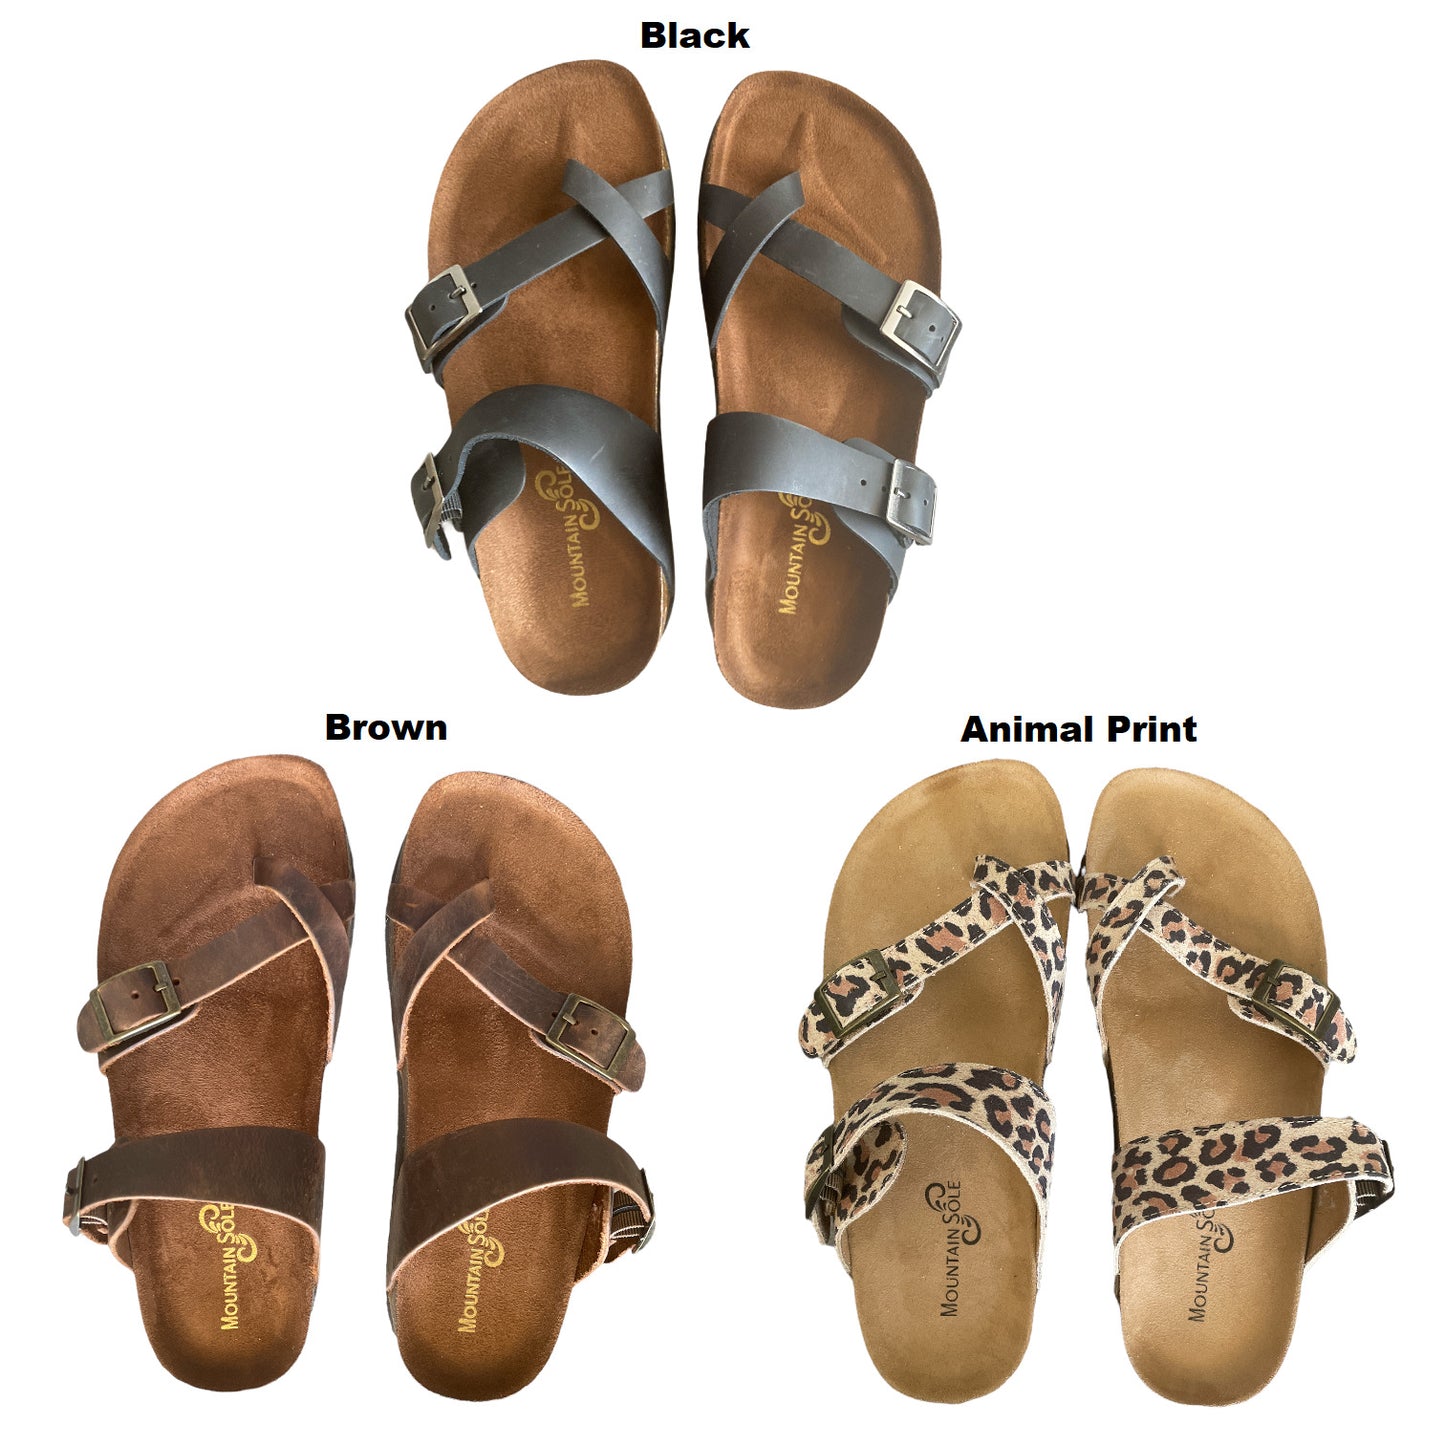 Mountain Sole Women's Birk Style Slip On Leather Sandals, Adj Buckle